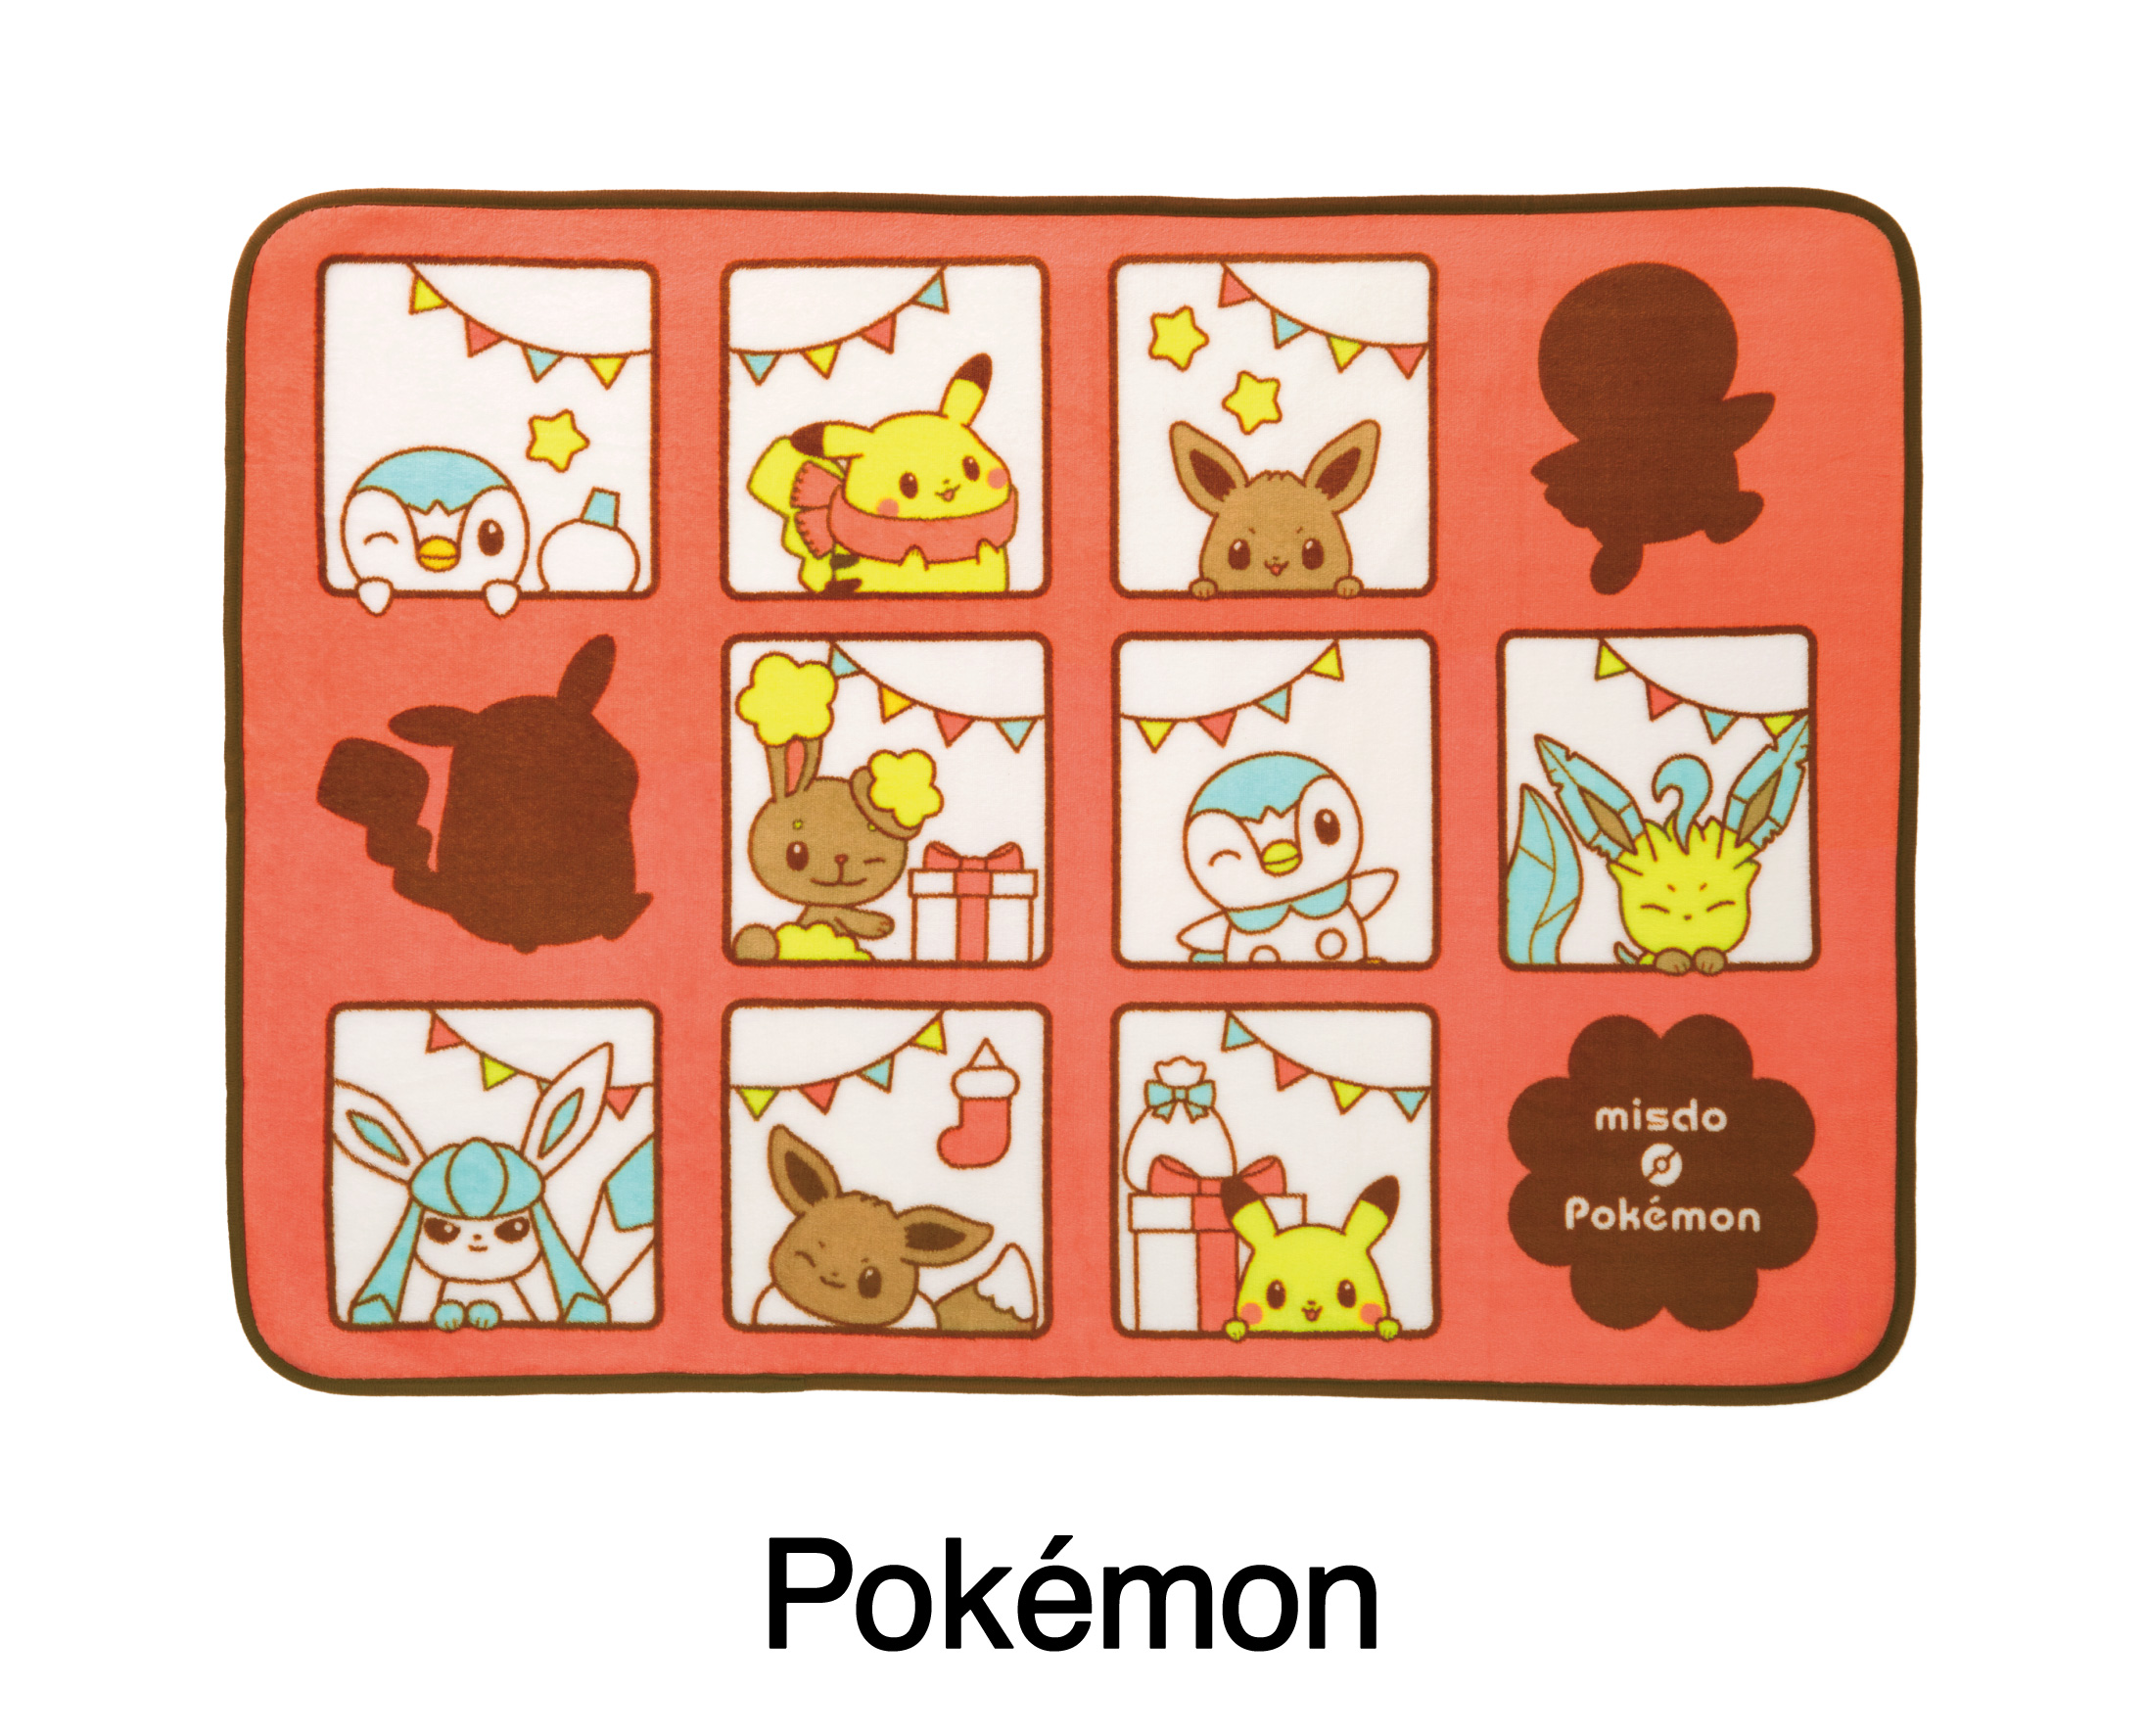 misdo Pokémon「ことしもいっしょコレクション」ミスド ポケモン ブランケット